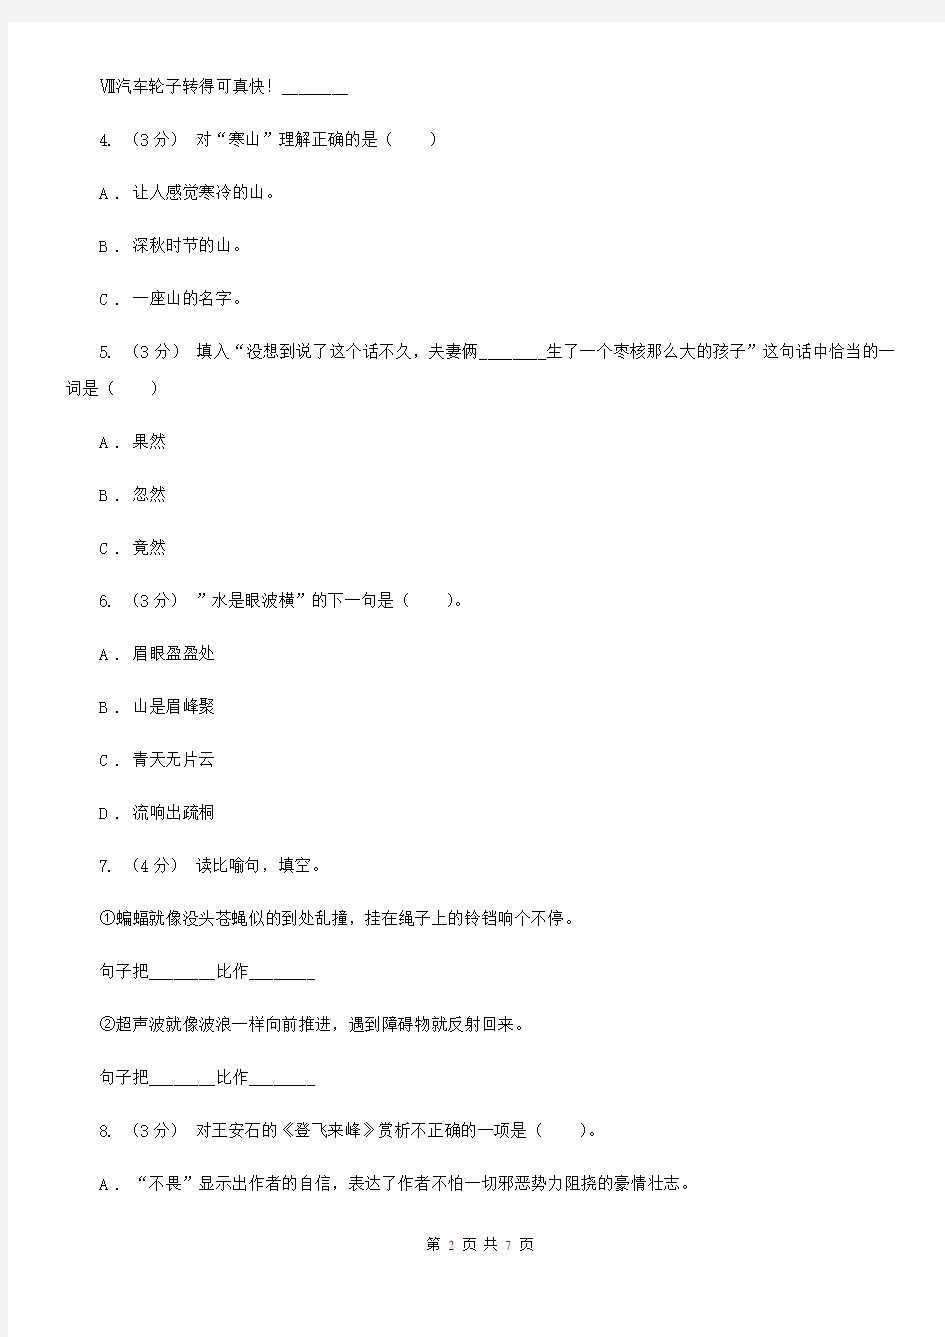 江西省六年级上学期语文期中素质测试试卷(I)卷